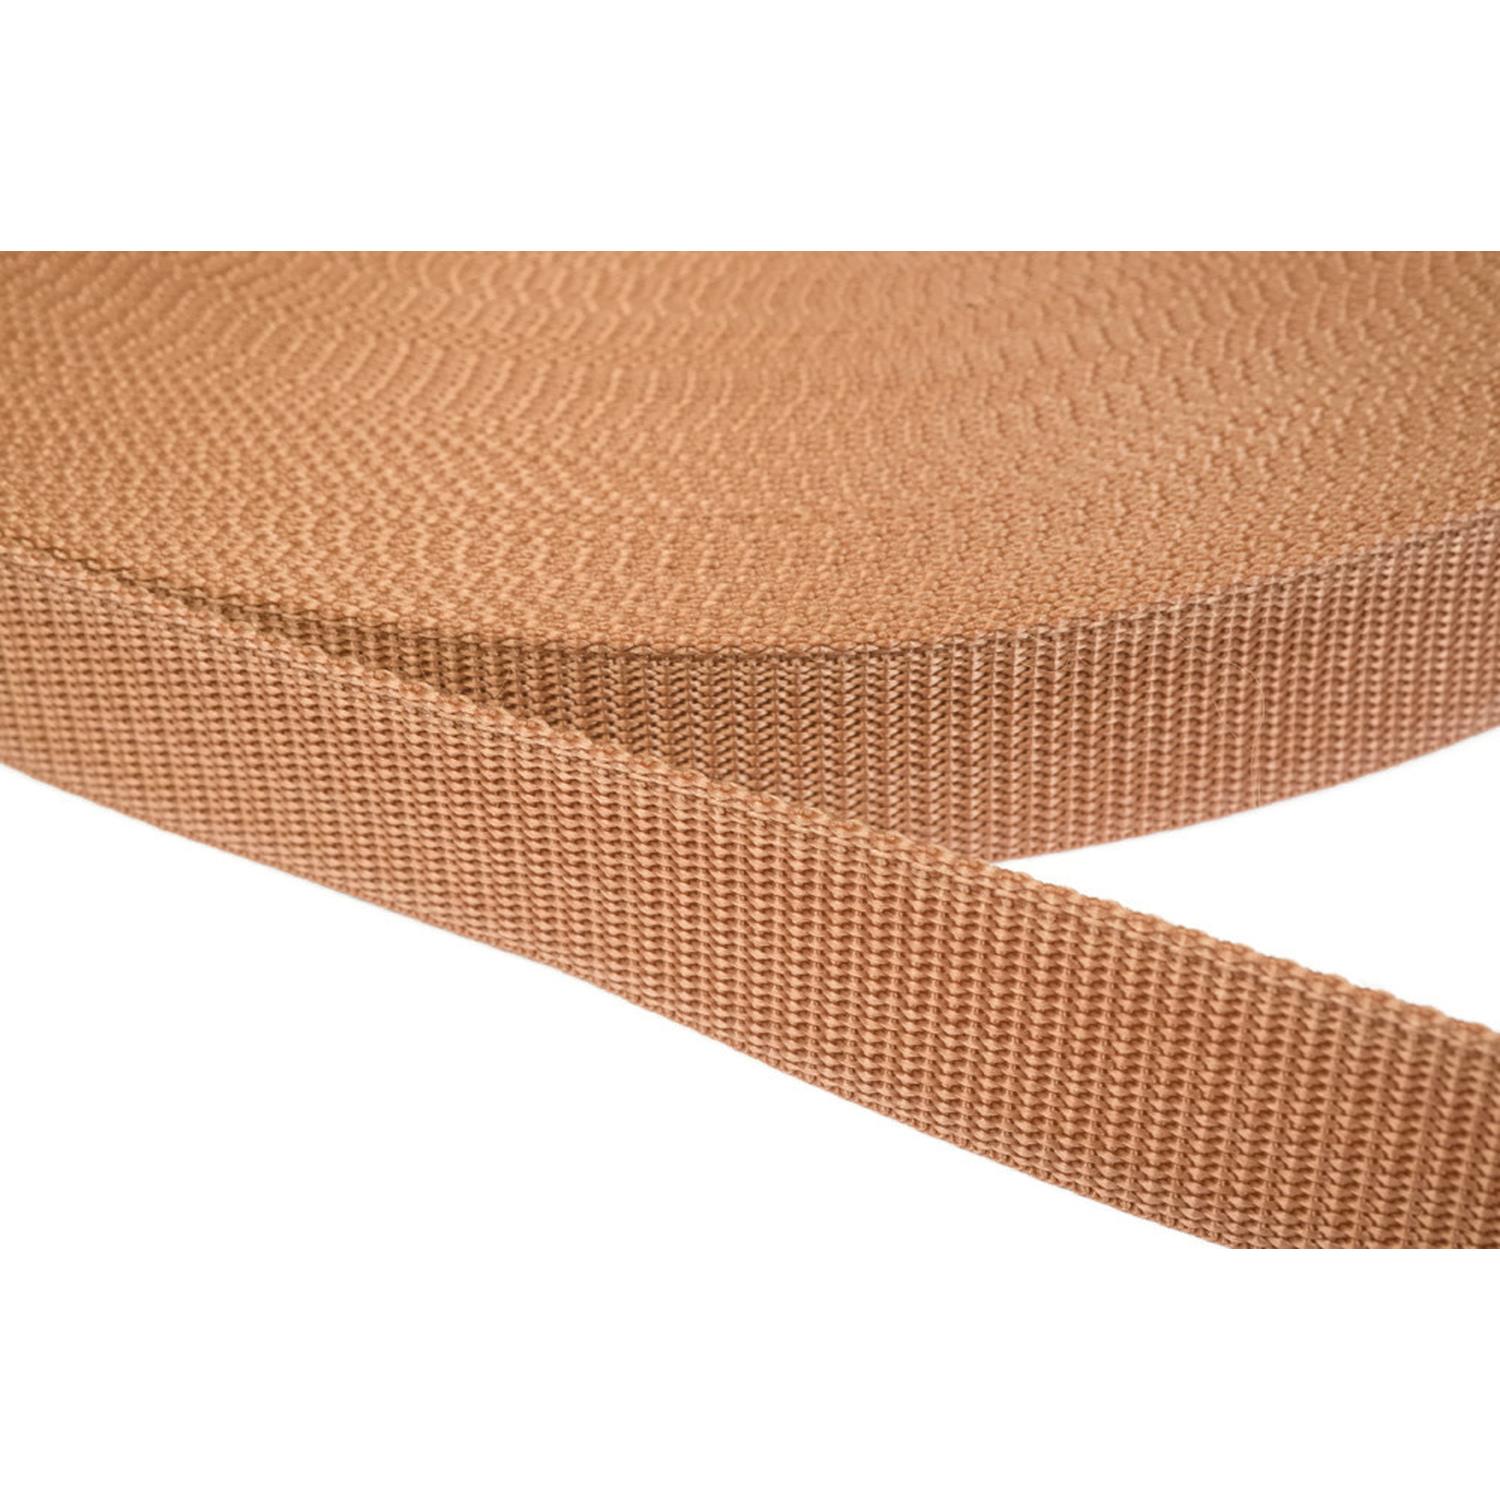 Gurtband 50mm breit aus Polypropylen in 41 Farben 06 - hellbraun 12 Meter